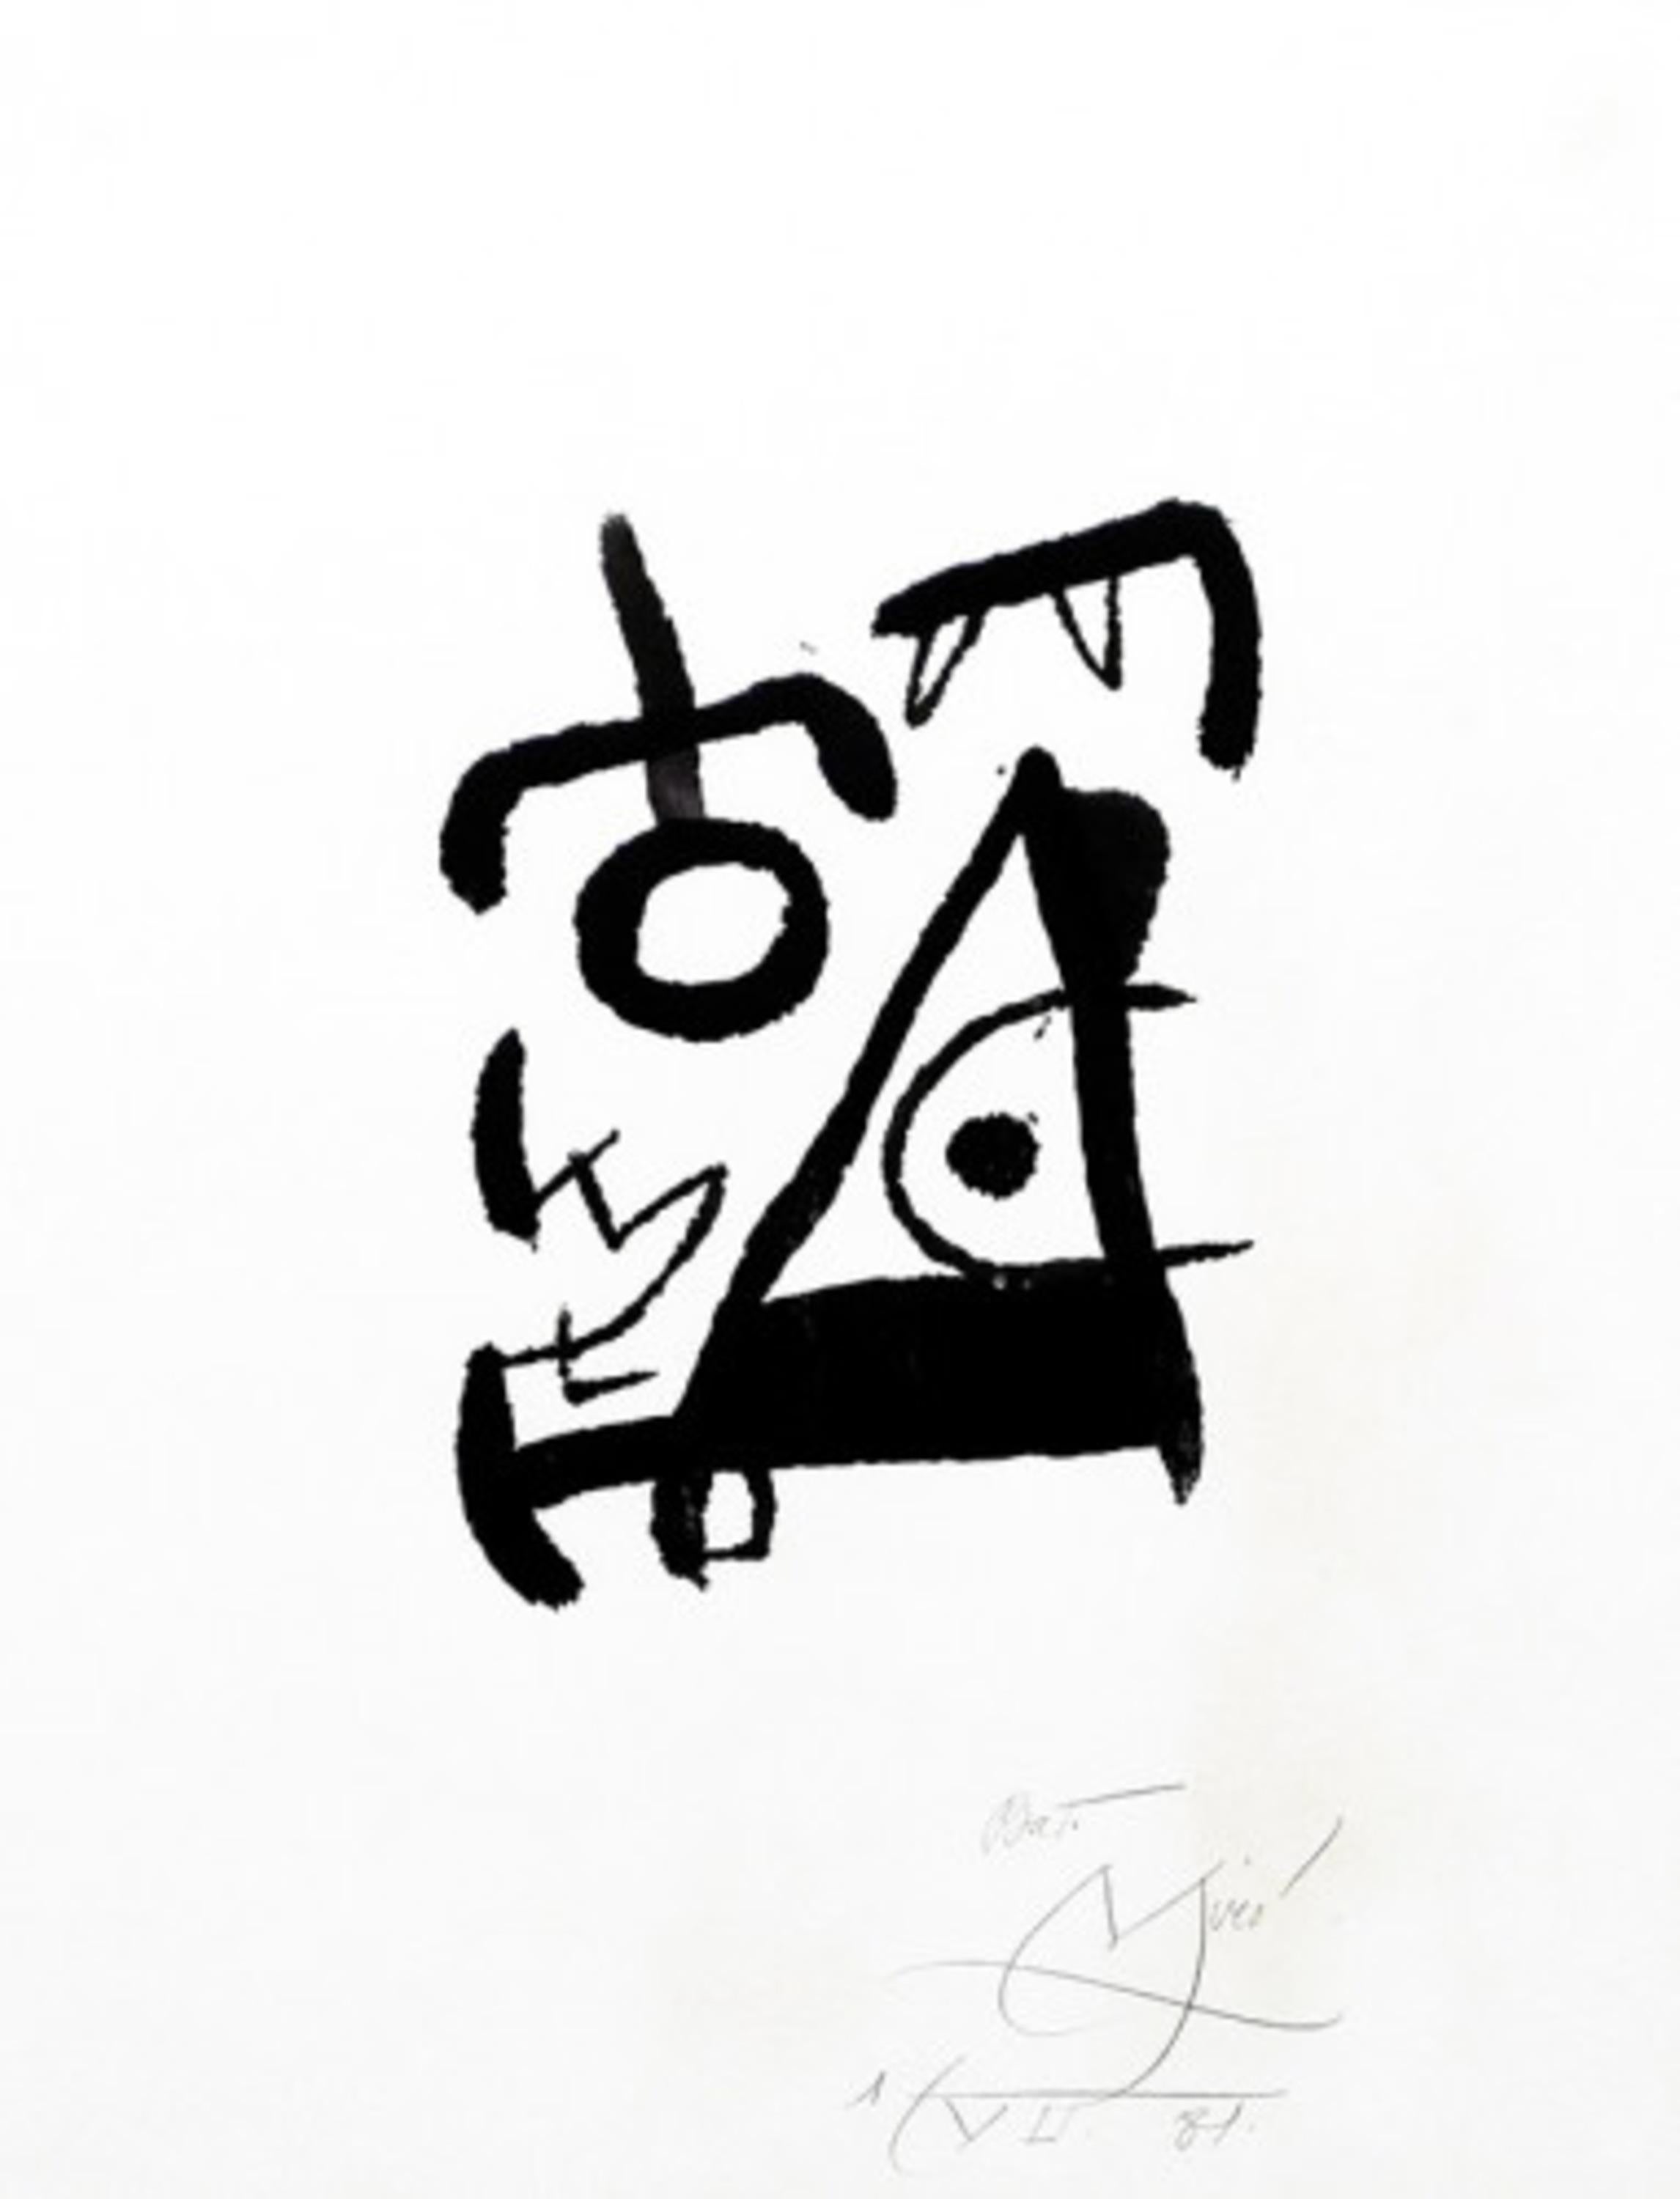 Miró Graveur VII - Print by Joan Miró